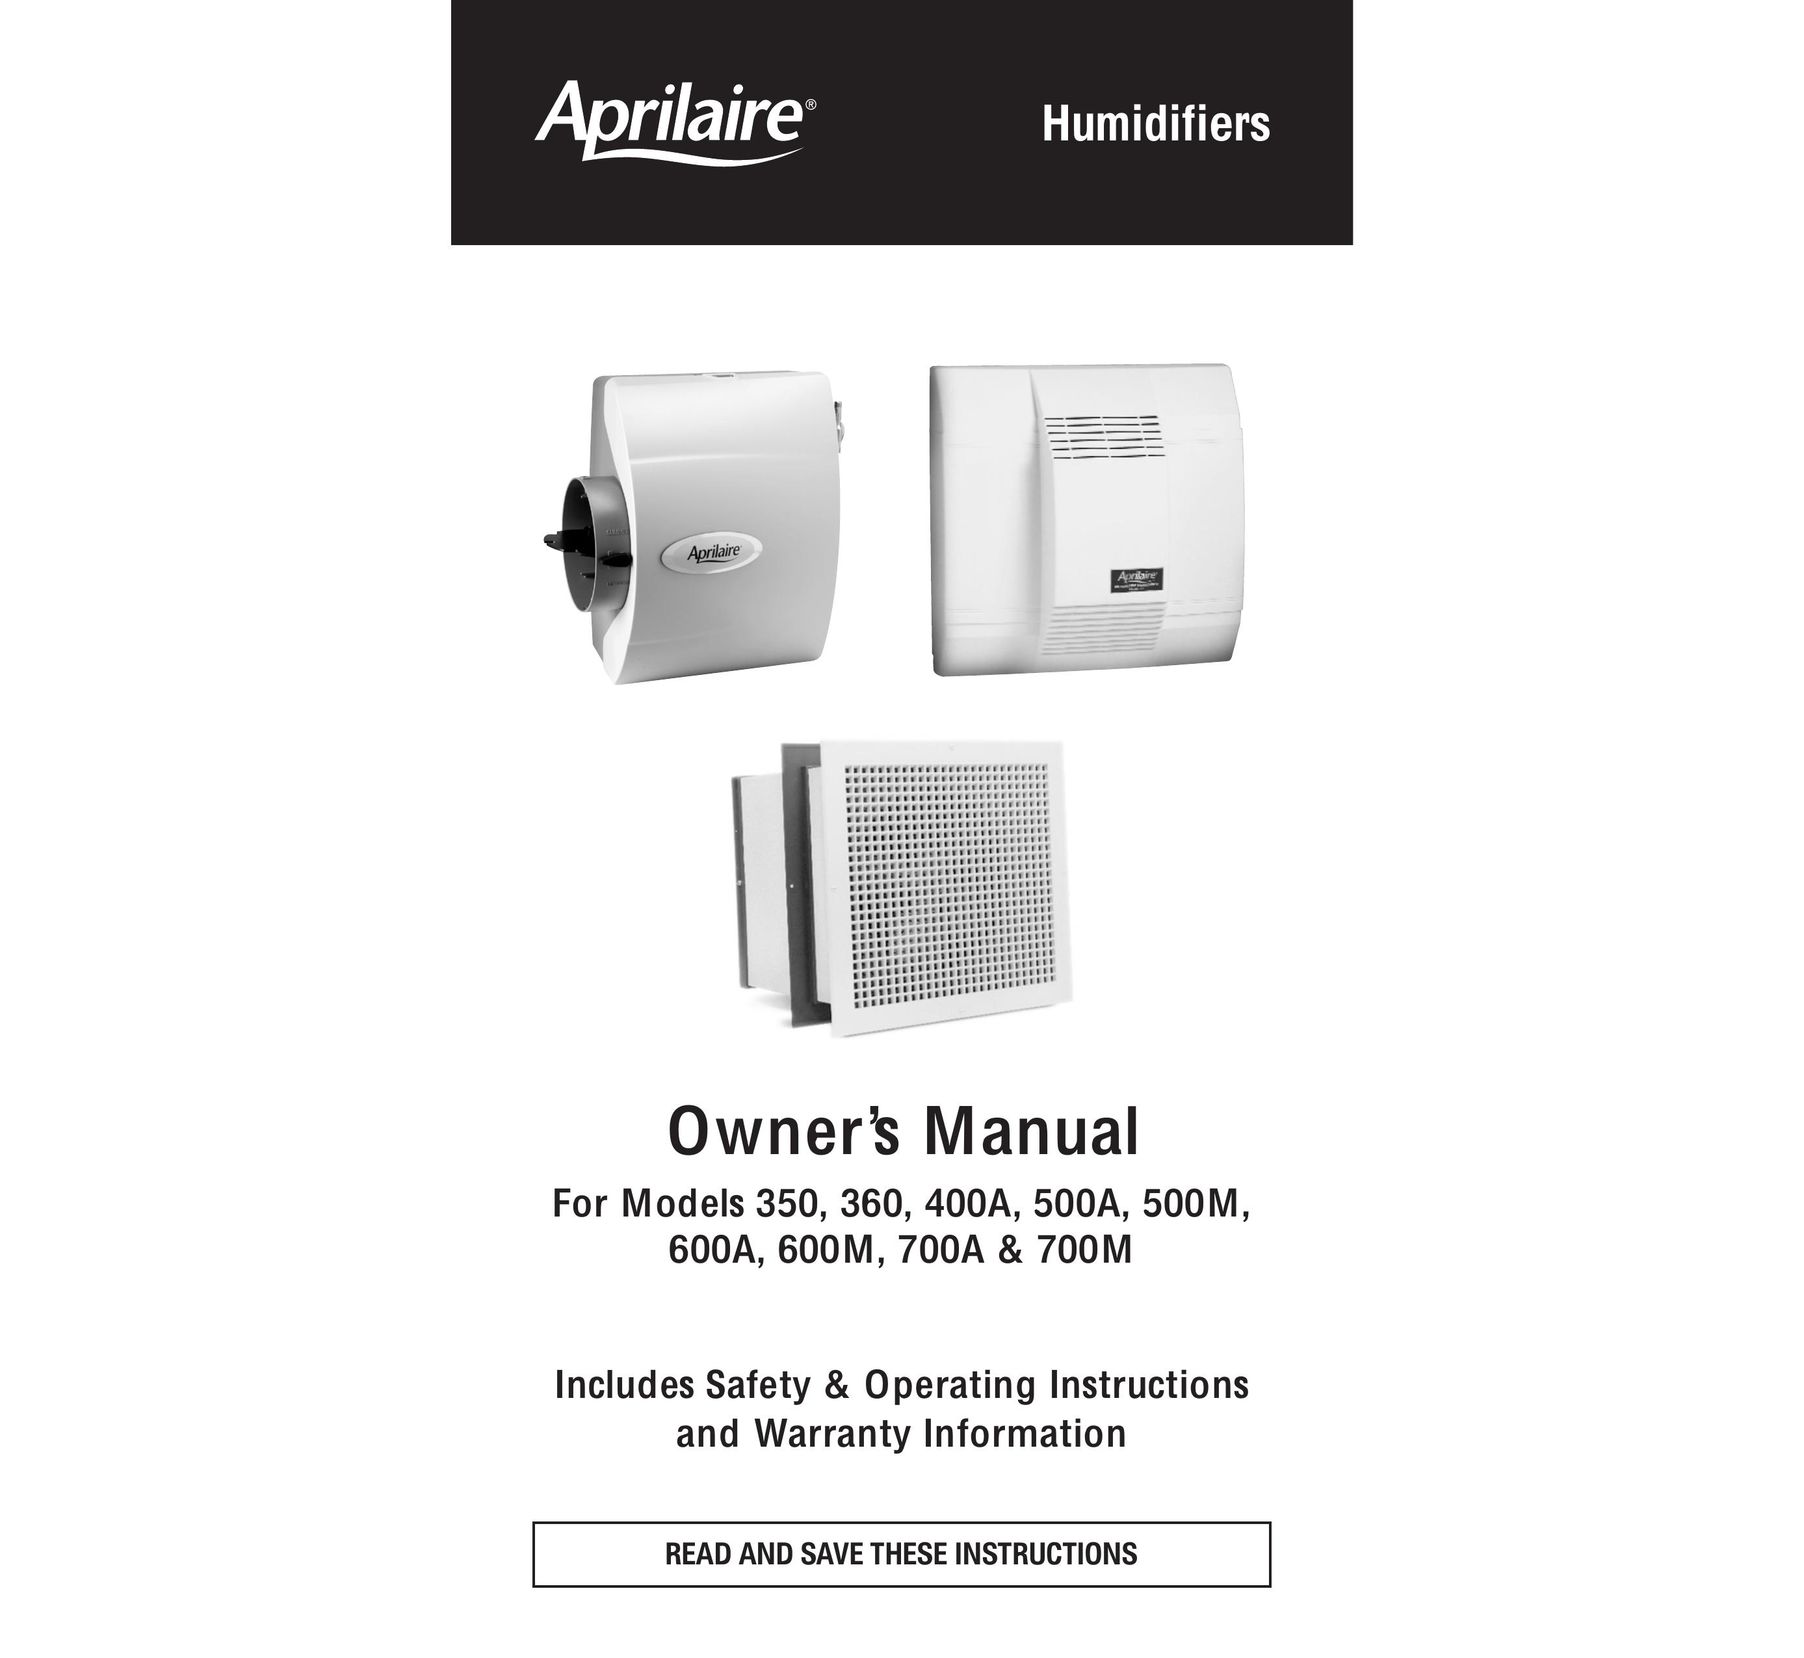 Aprilaire 500A Dehumidifier User Manual